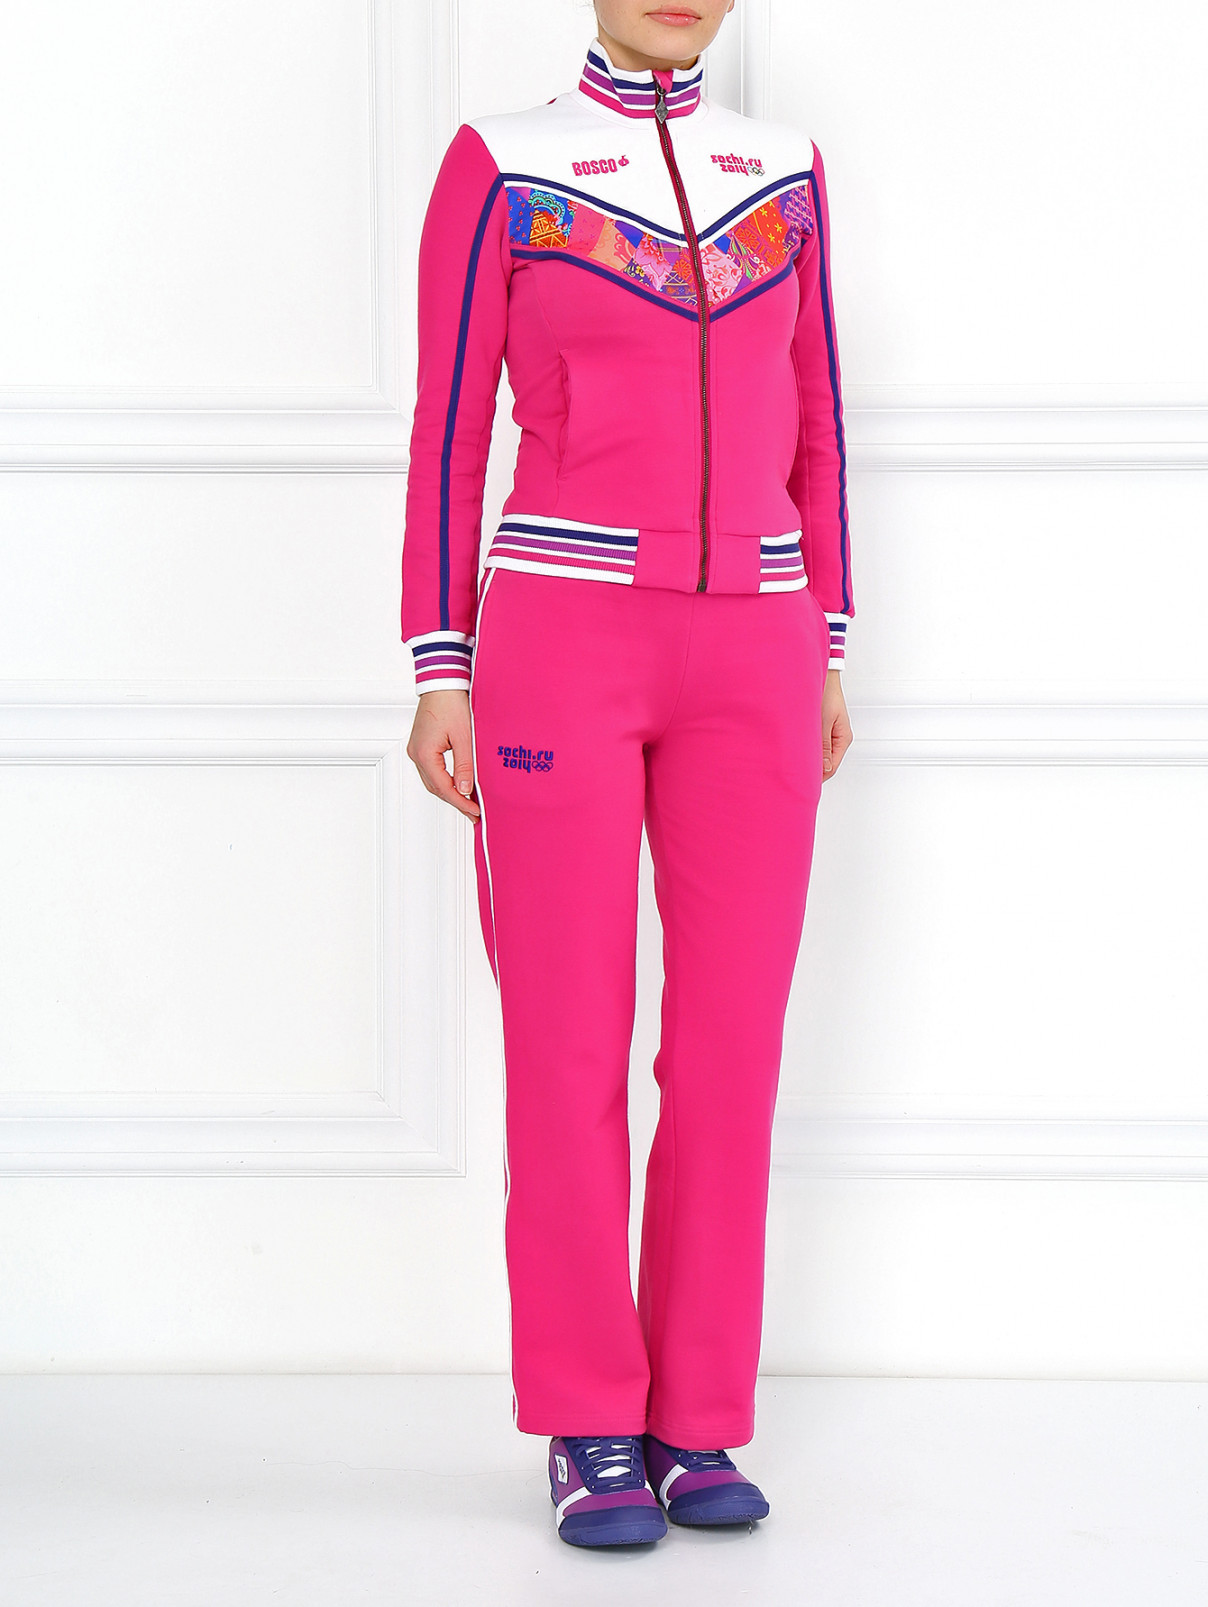 Спортивные брюки на резинке Sochi 2014  –  Модель Общий вид  – Цвет:  Розовый